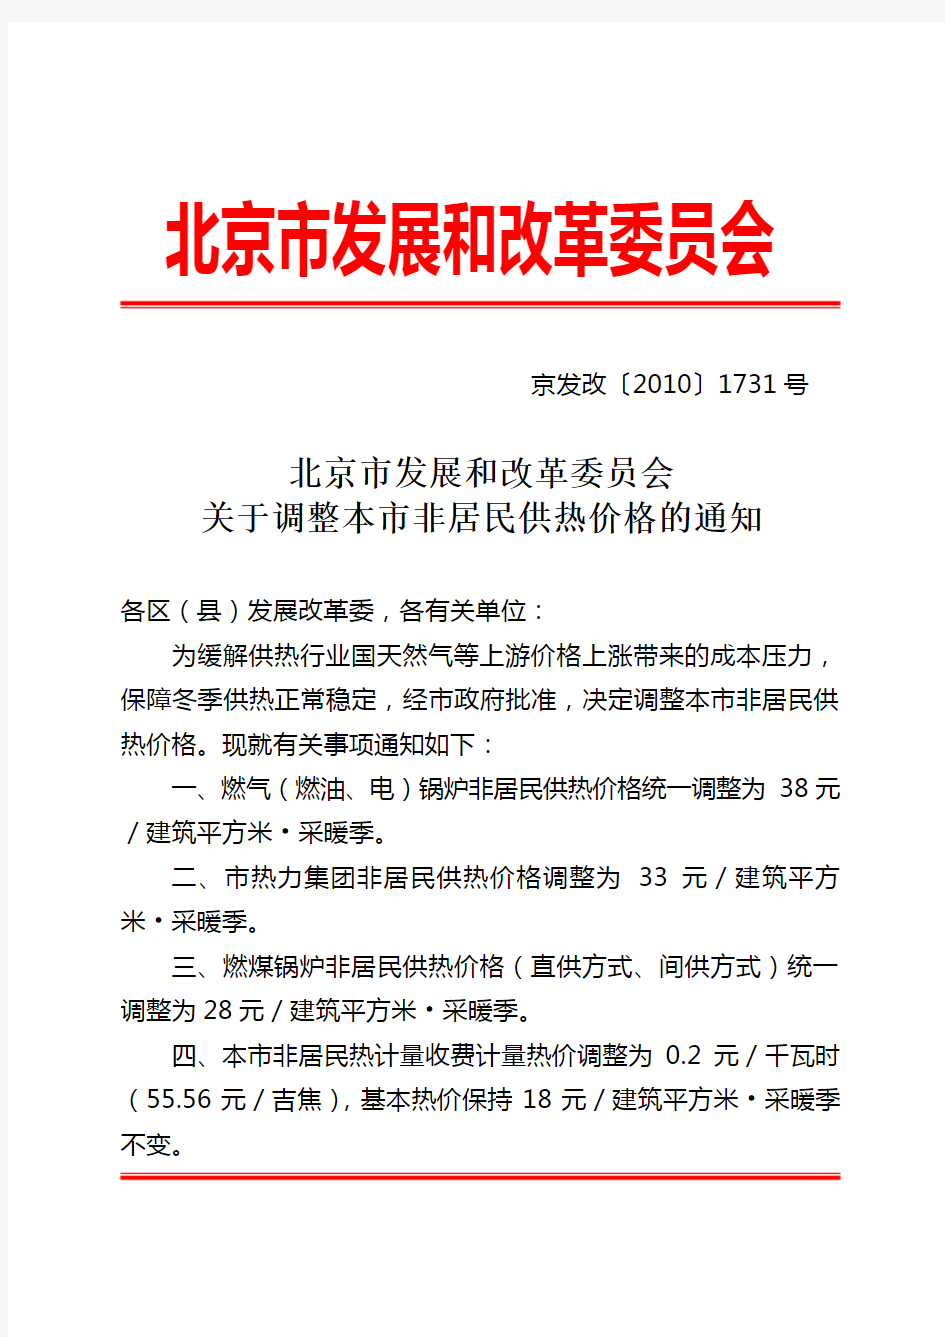 [京发改〔2010〕1731号]北京市发展和改革委员会关于调整本市非居民供热价格的通知